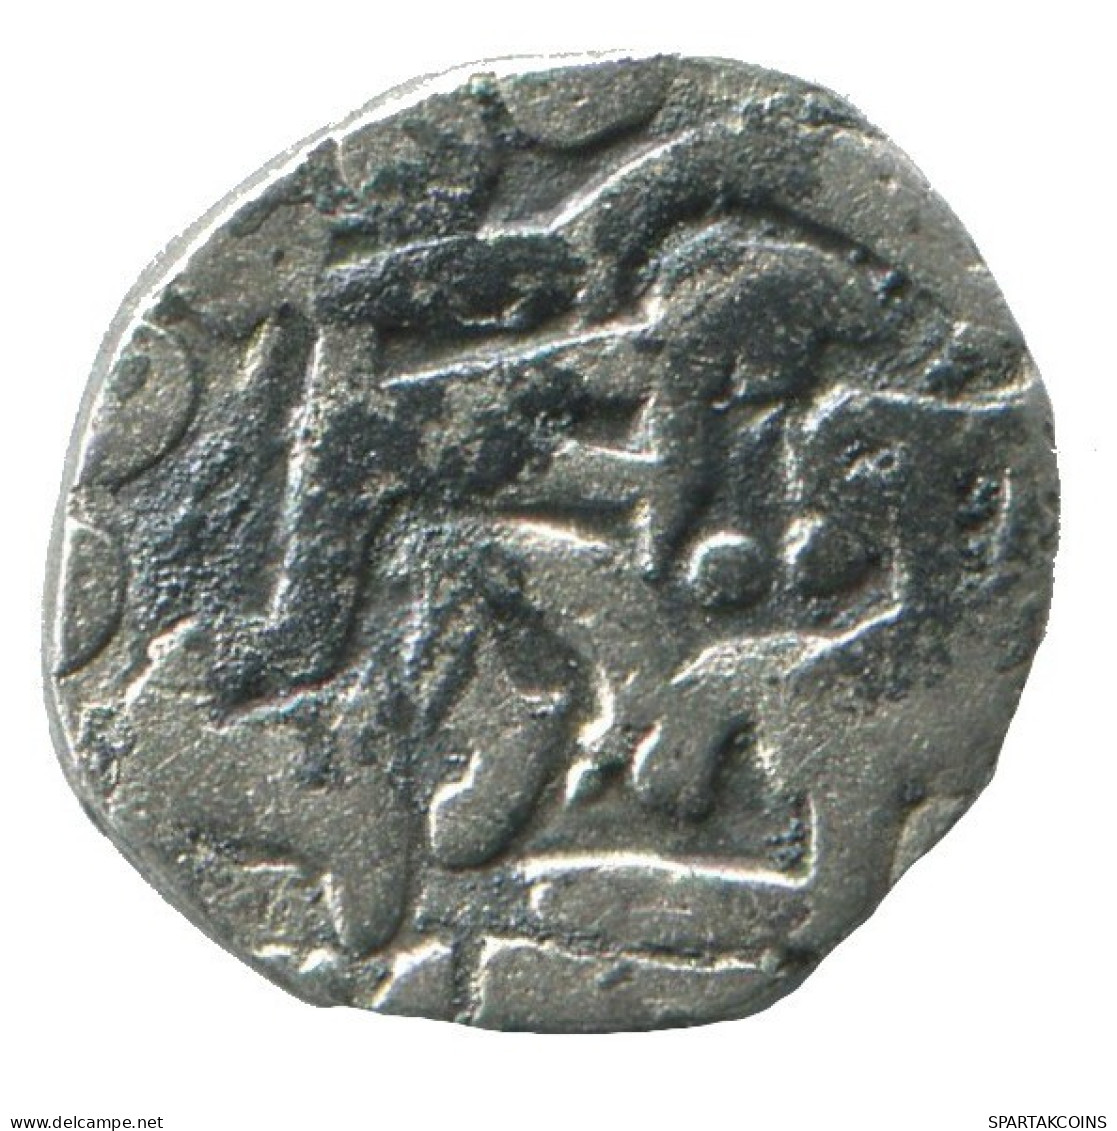 GOLDEN HORDE Silver Dirham Medieval Islamic Coin 0.6g/12mm #NNN2034.8.U.A - Islamic